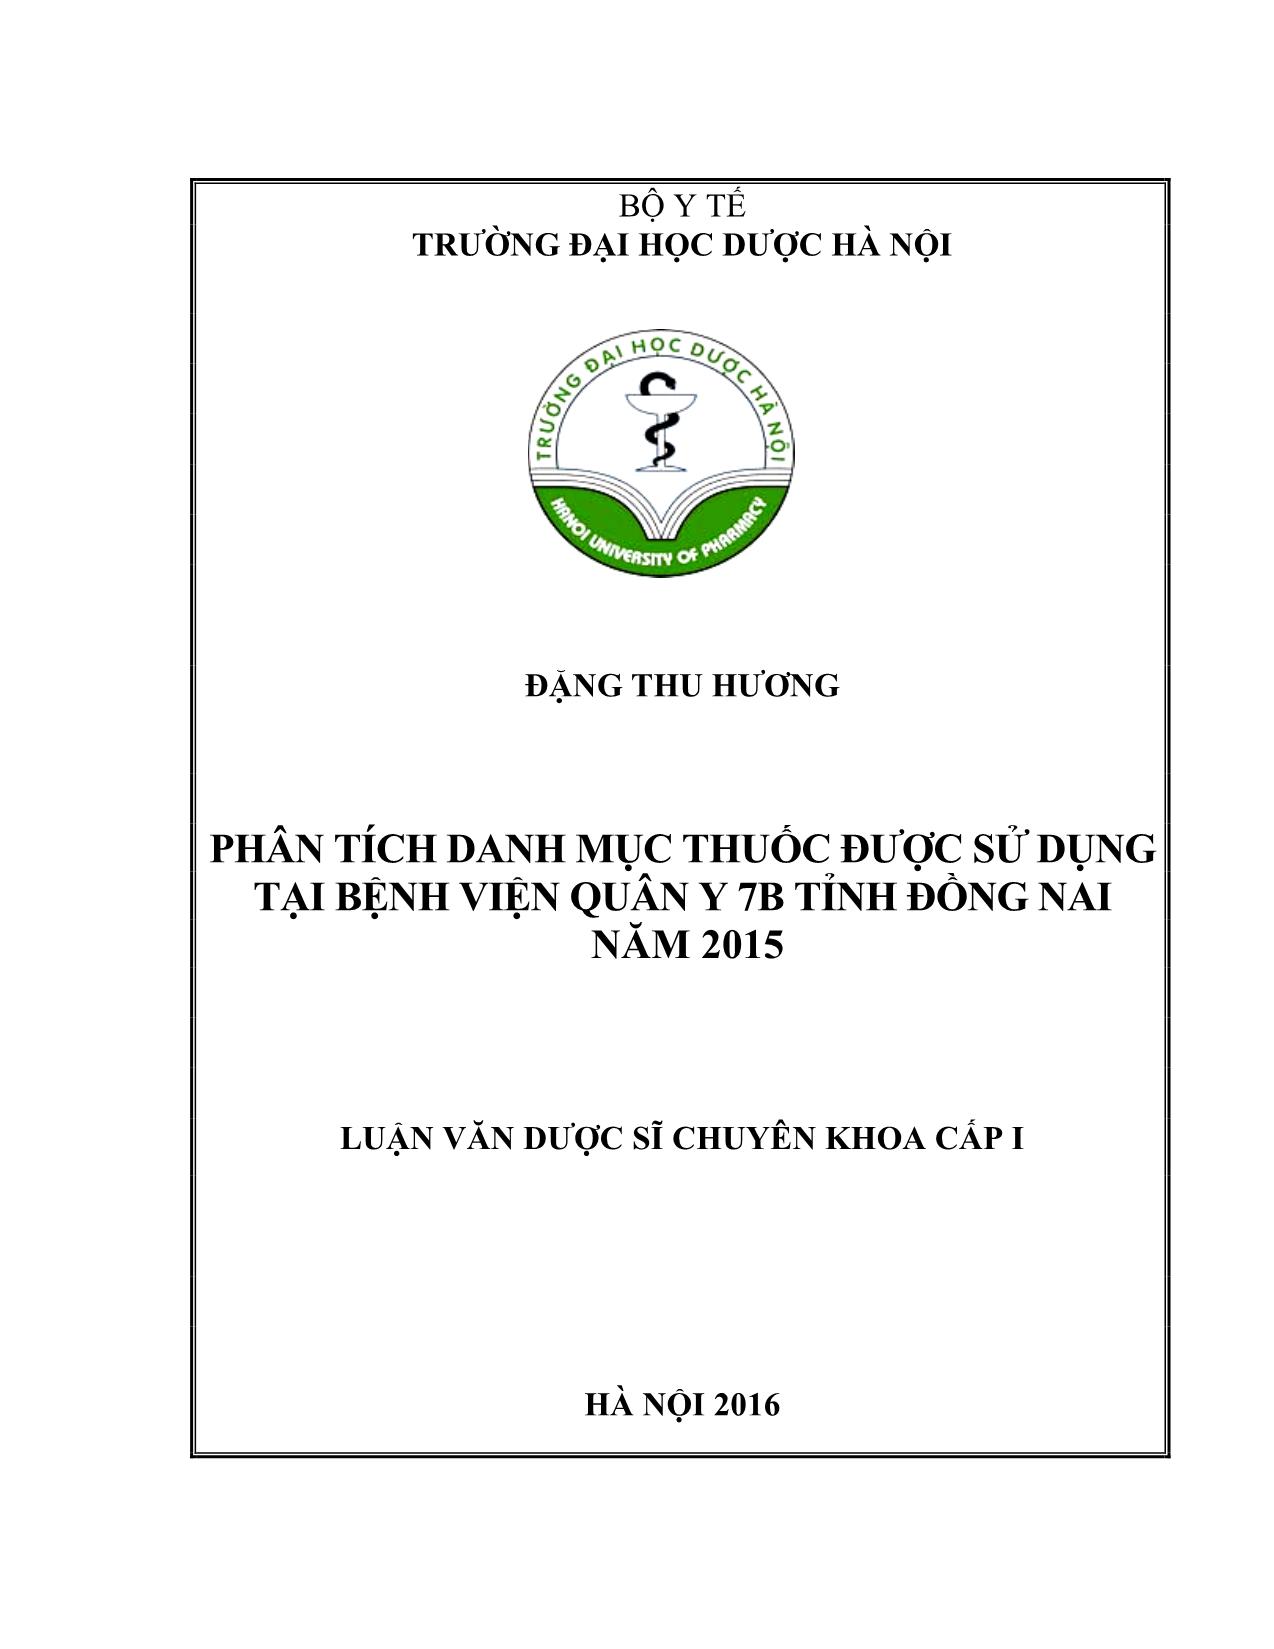 Phân tích danh mục thuốc được sử dụng tại bệnh viện quân y 7B tỉnh Đồng nai năm 2015 trang 1